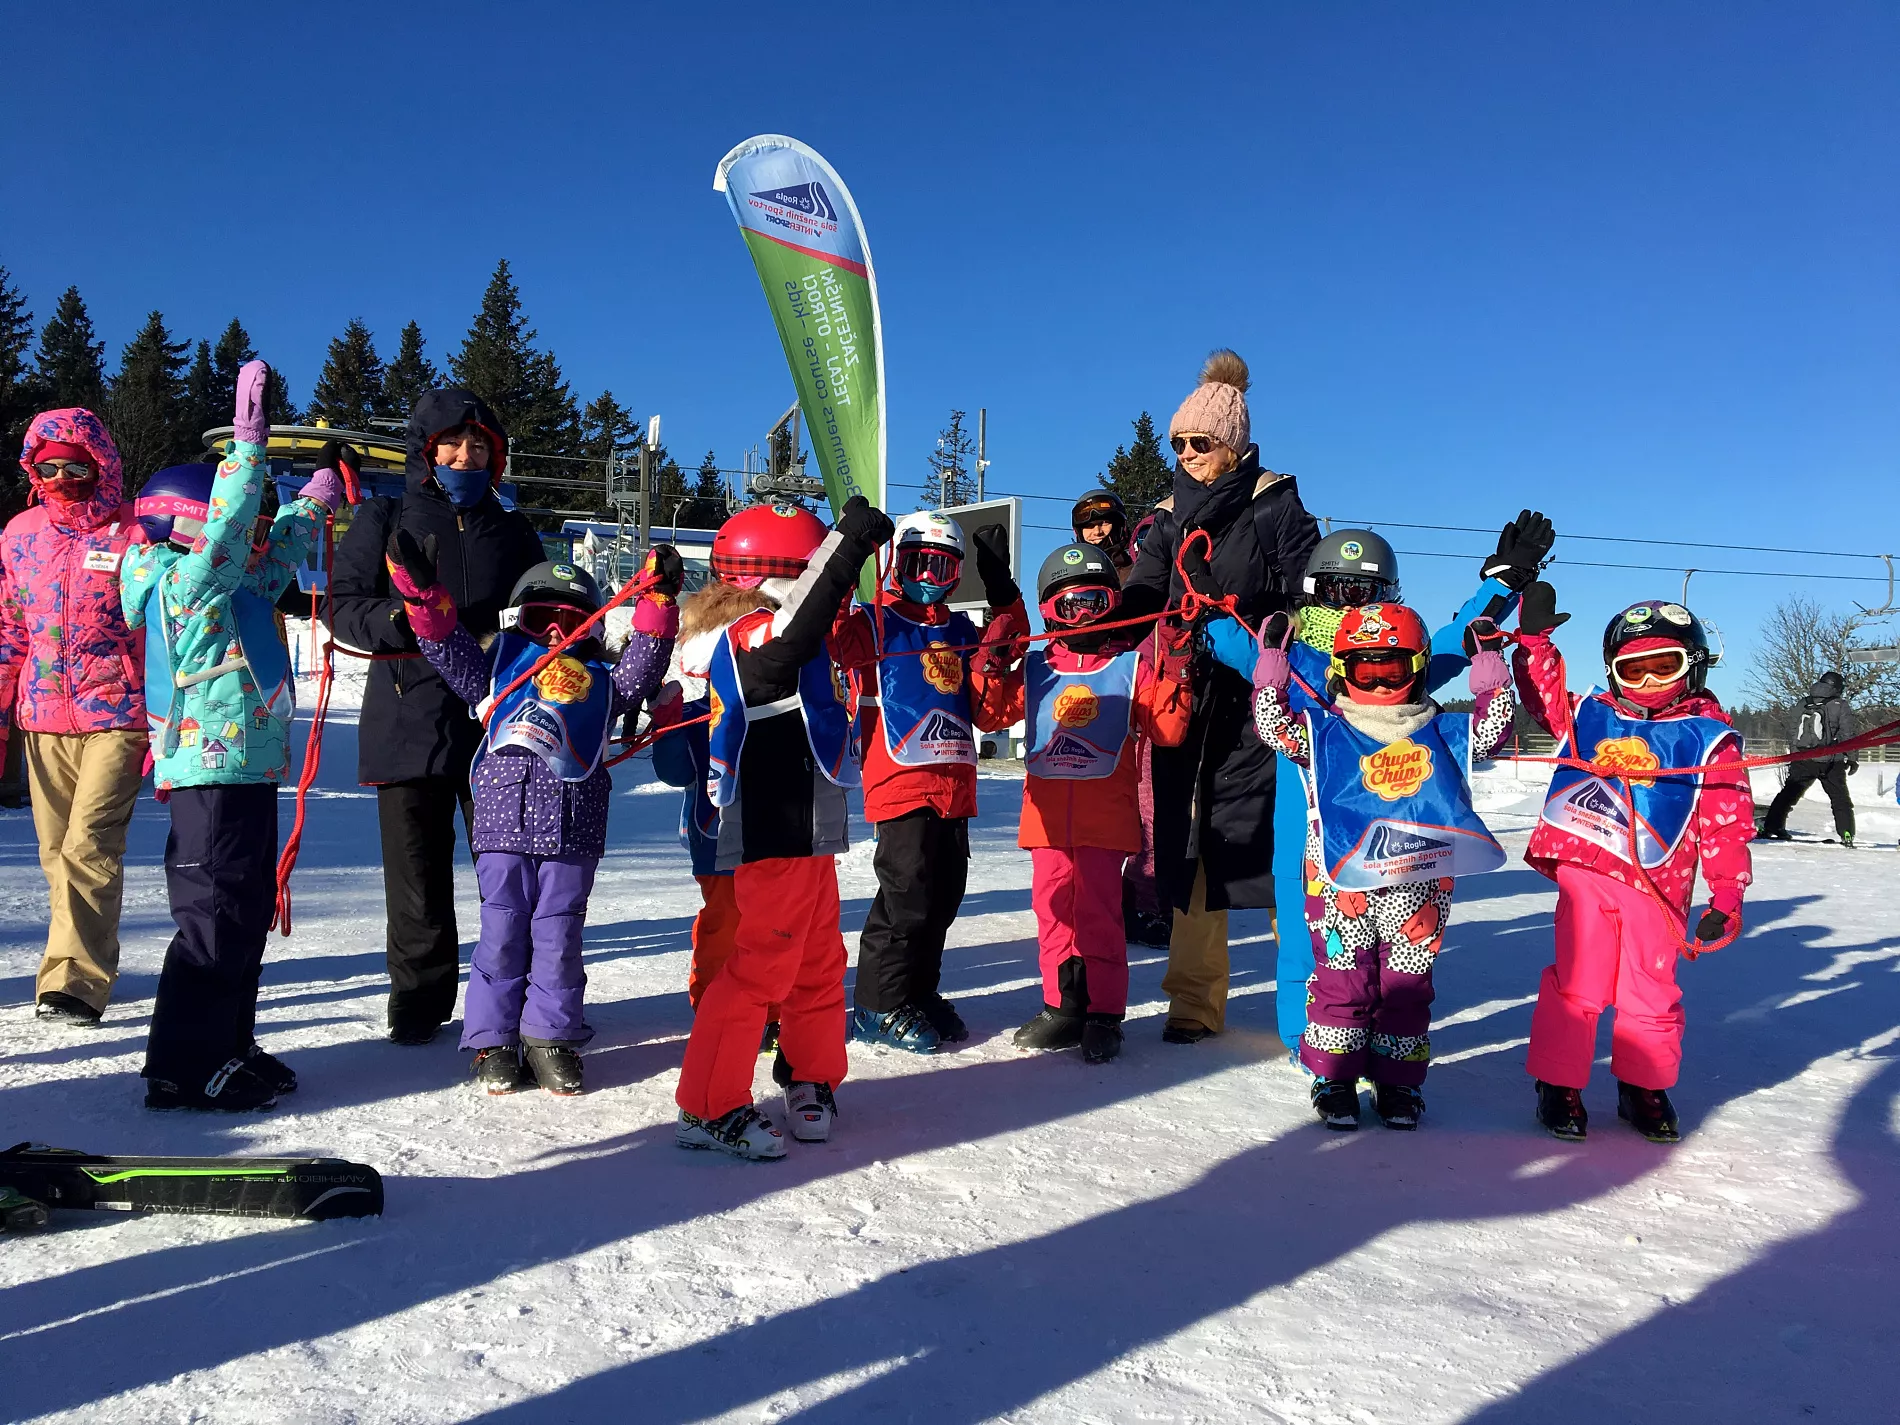 Sola Sneznih Sportov Rogla in Slovenia, Europe | Snowboarding,Skiing - Rated 0.9